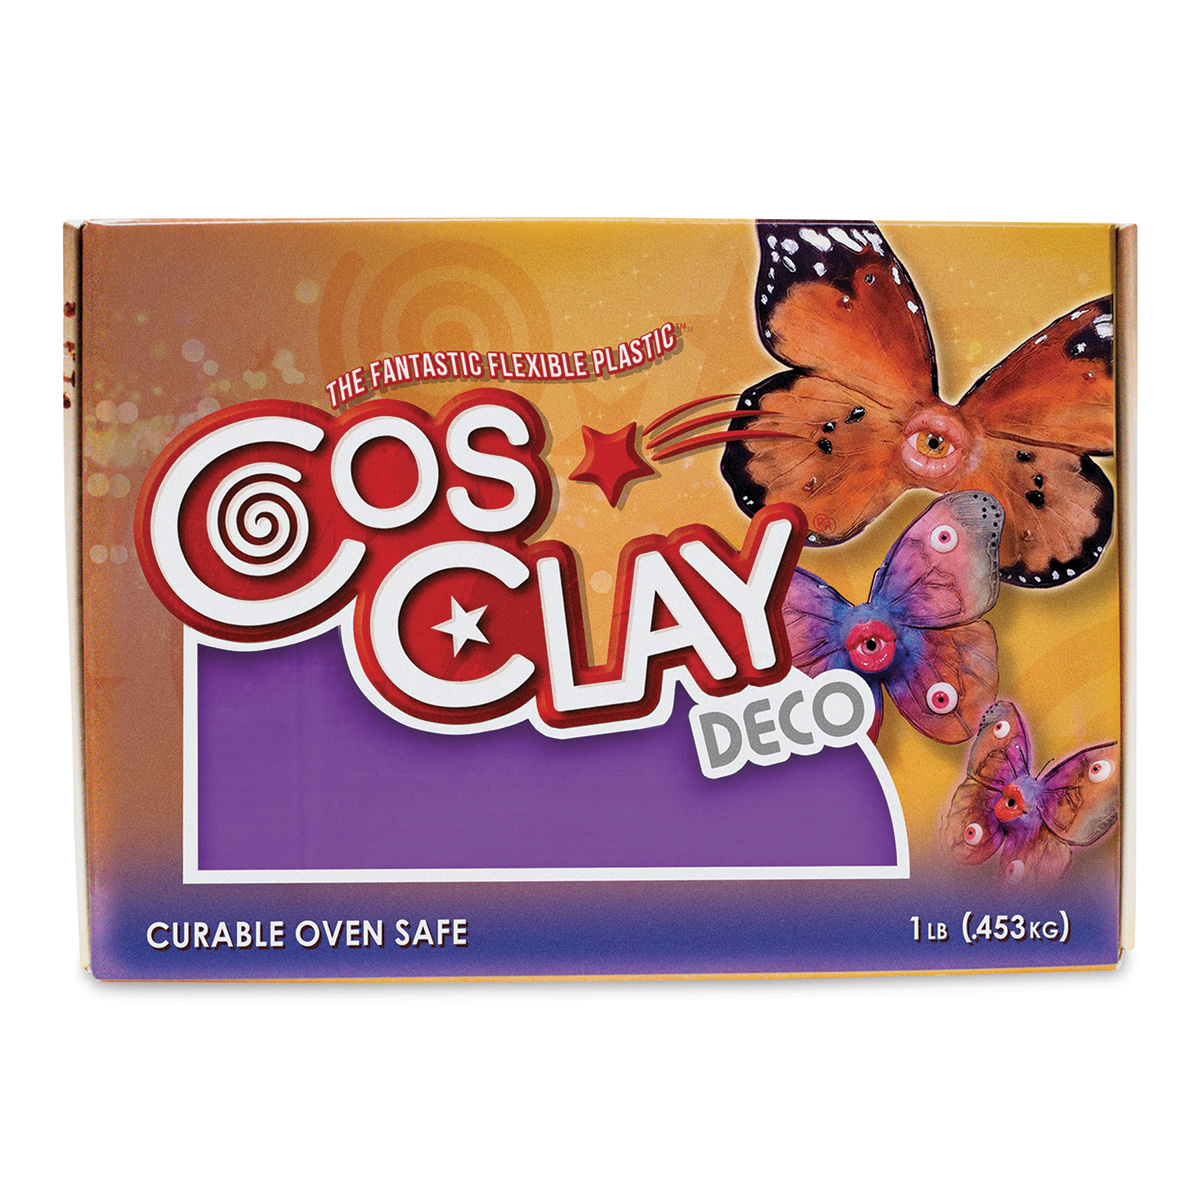 Cosclay Deco Flexible Polymer Clay - Violet, 1 lb